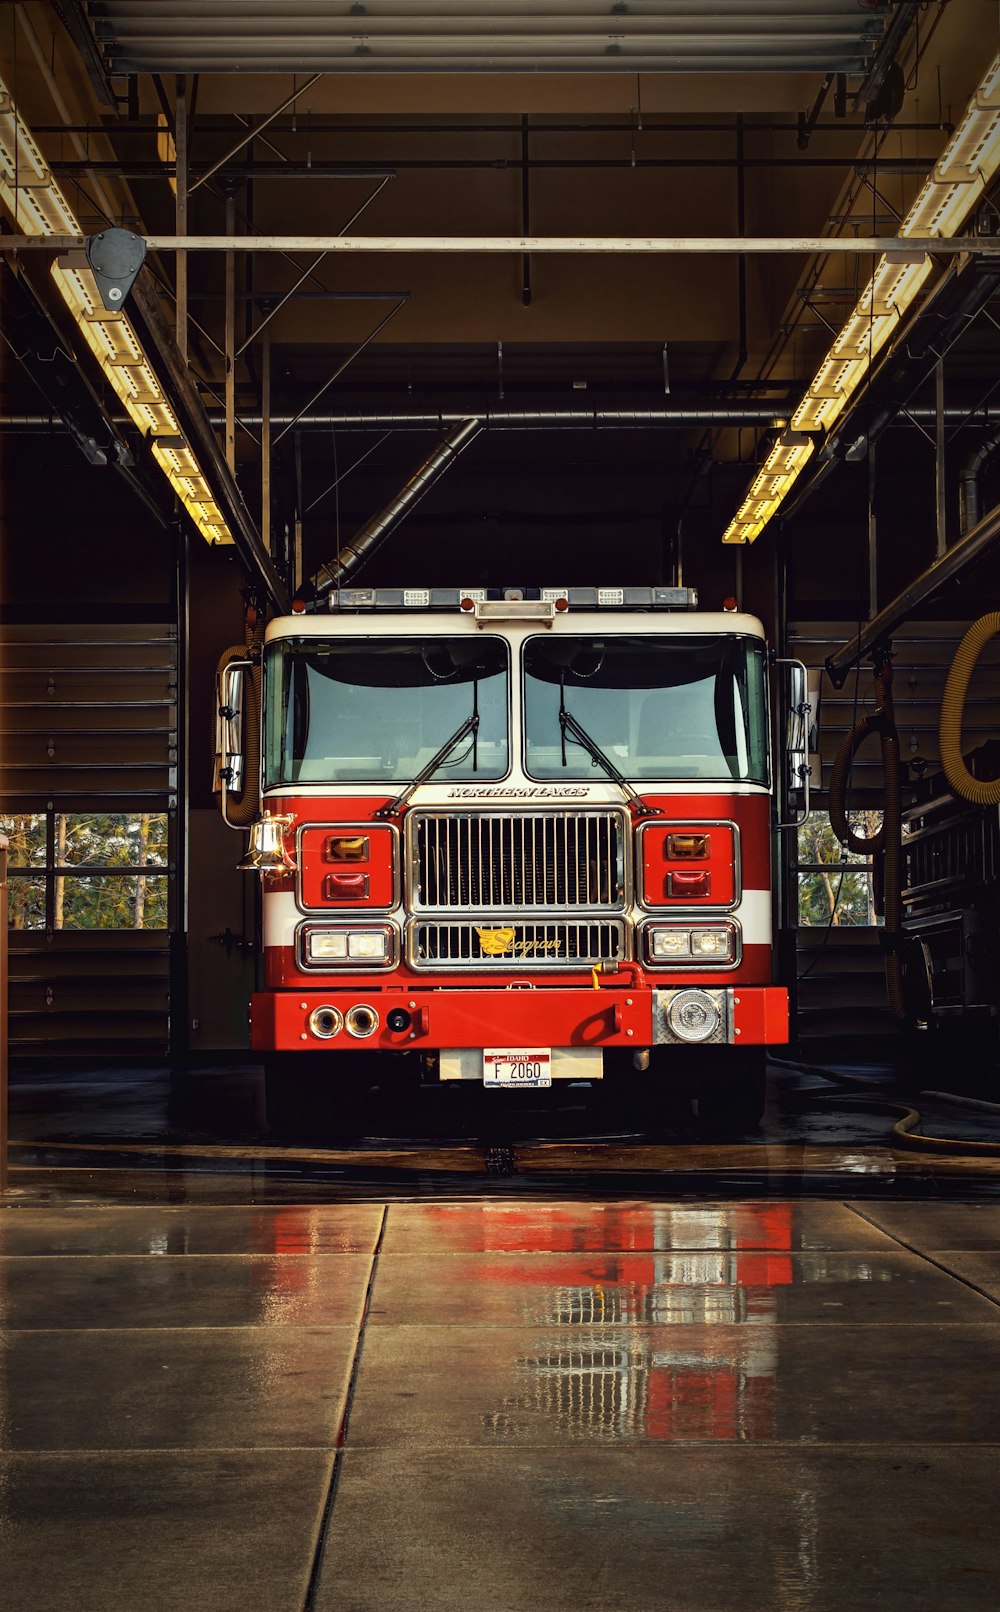 Feuerwehrauto Bilder – Durchsuchen 55,420 Archivfotos